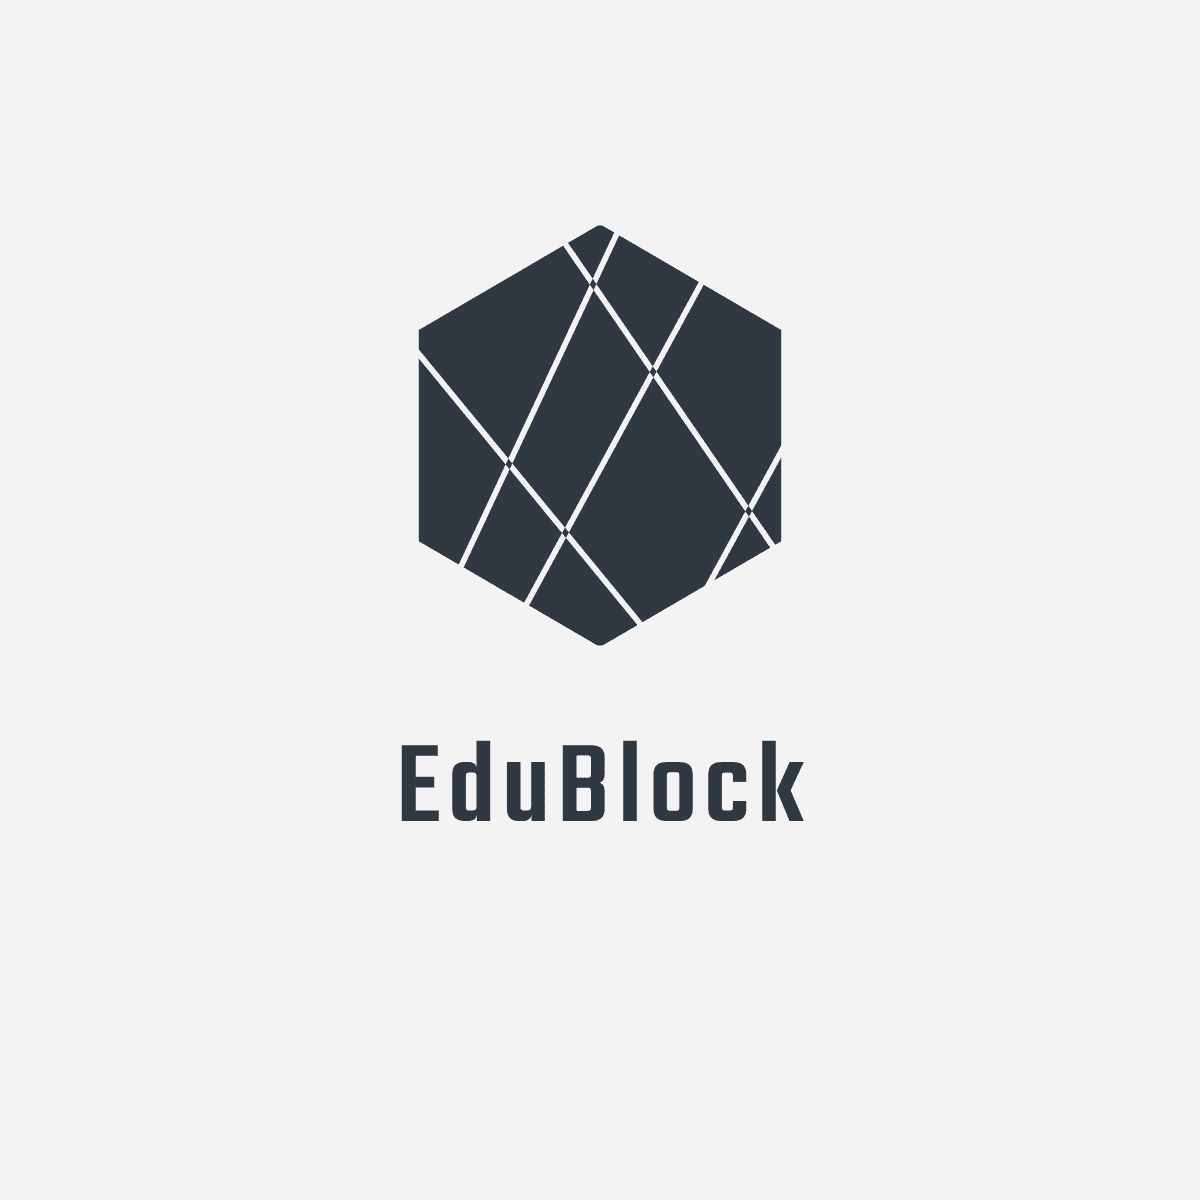 Edublock